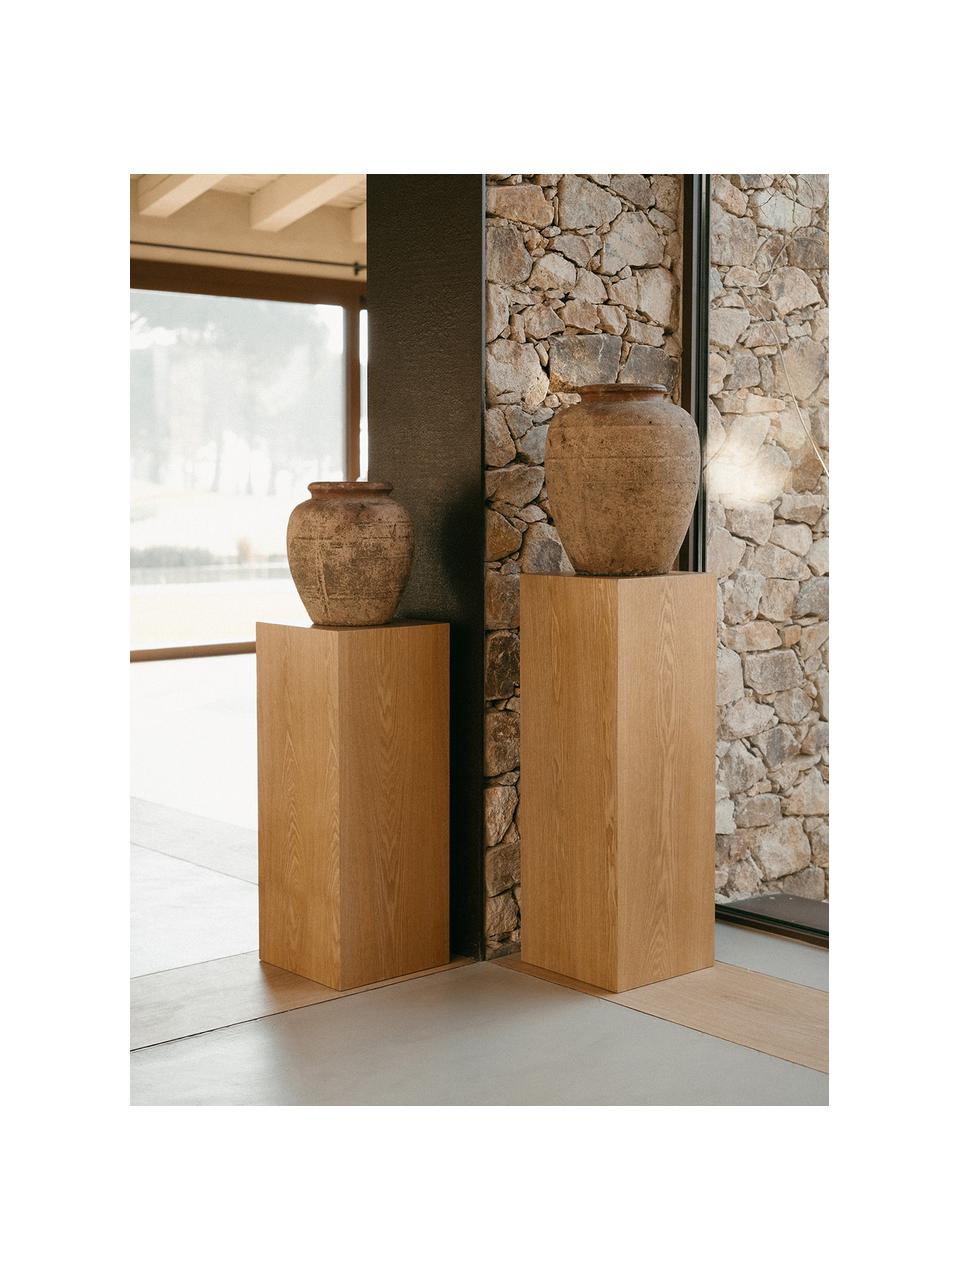 Colonna decorativa in legno Pedestal, in diverse dimensioni, Pannello di fibra a media densità (MDF), con finitura in frassino, Marrone chiaro, Larg. 28 x Alt. 70 cm